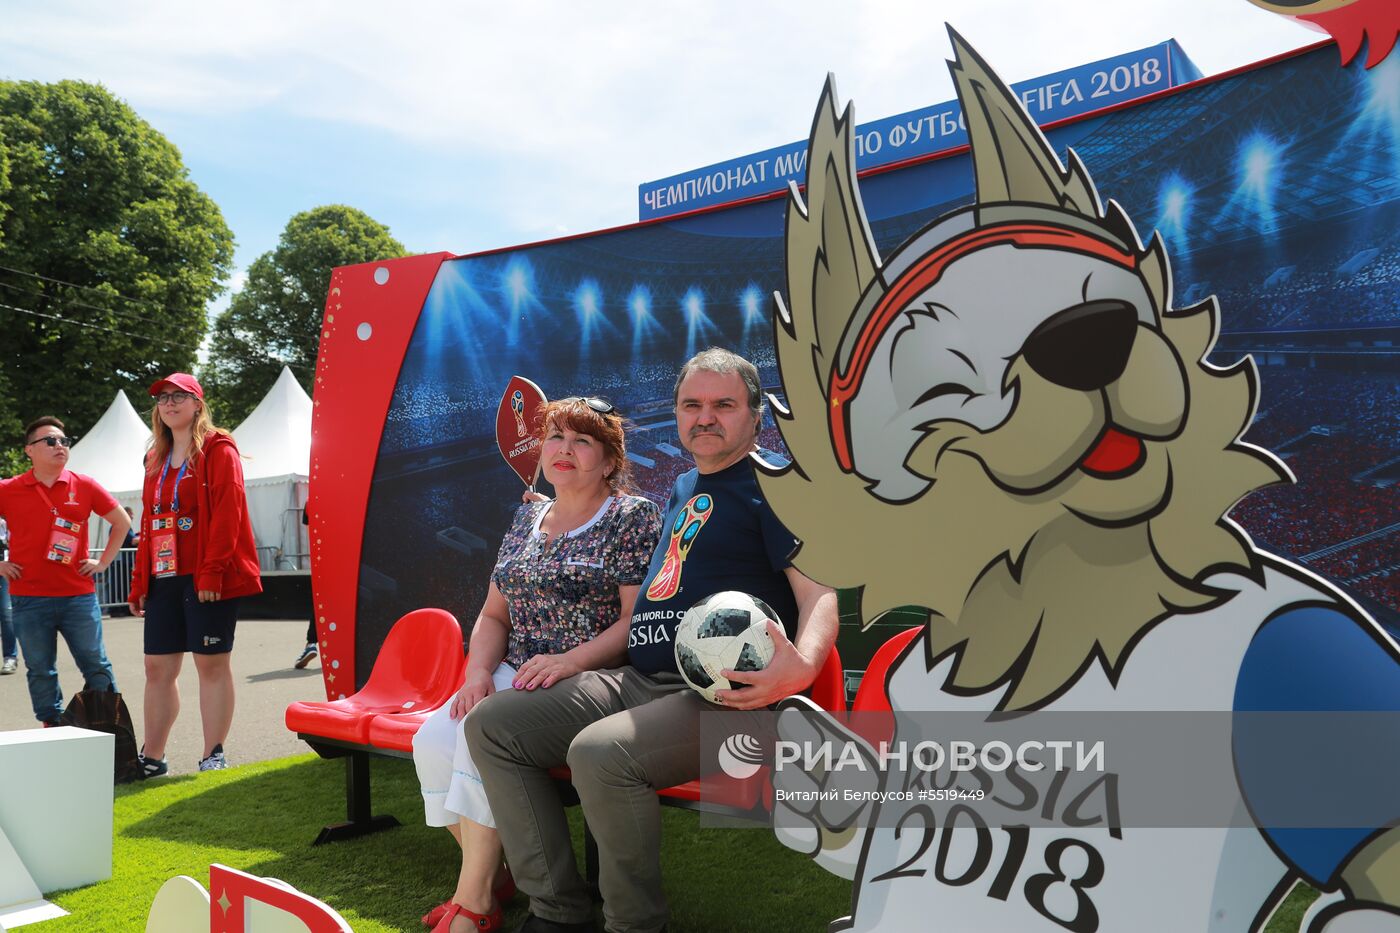 Кубок ЧМ-2018 по футболу выставили в Москве